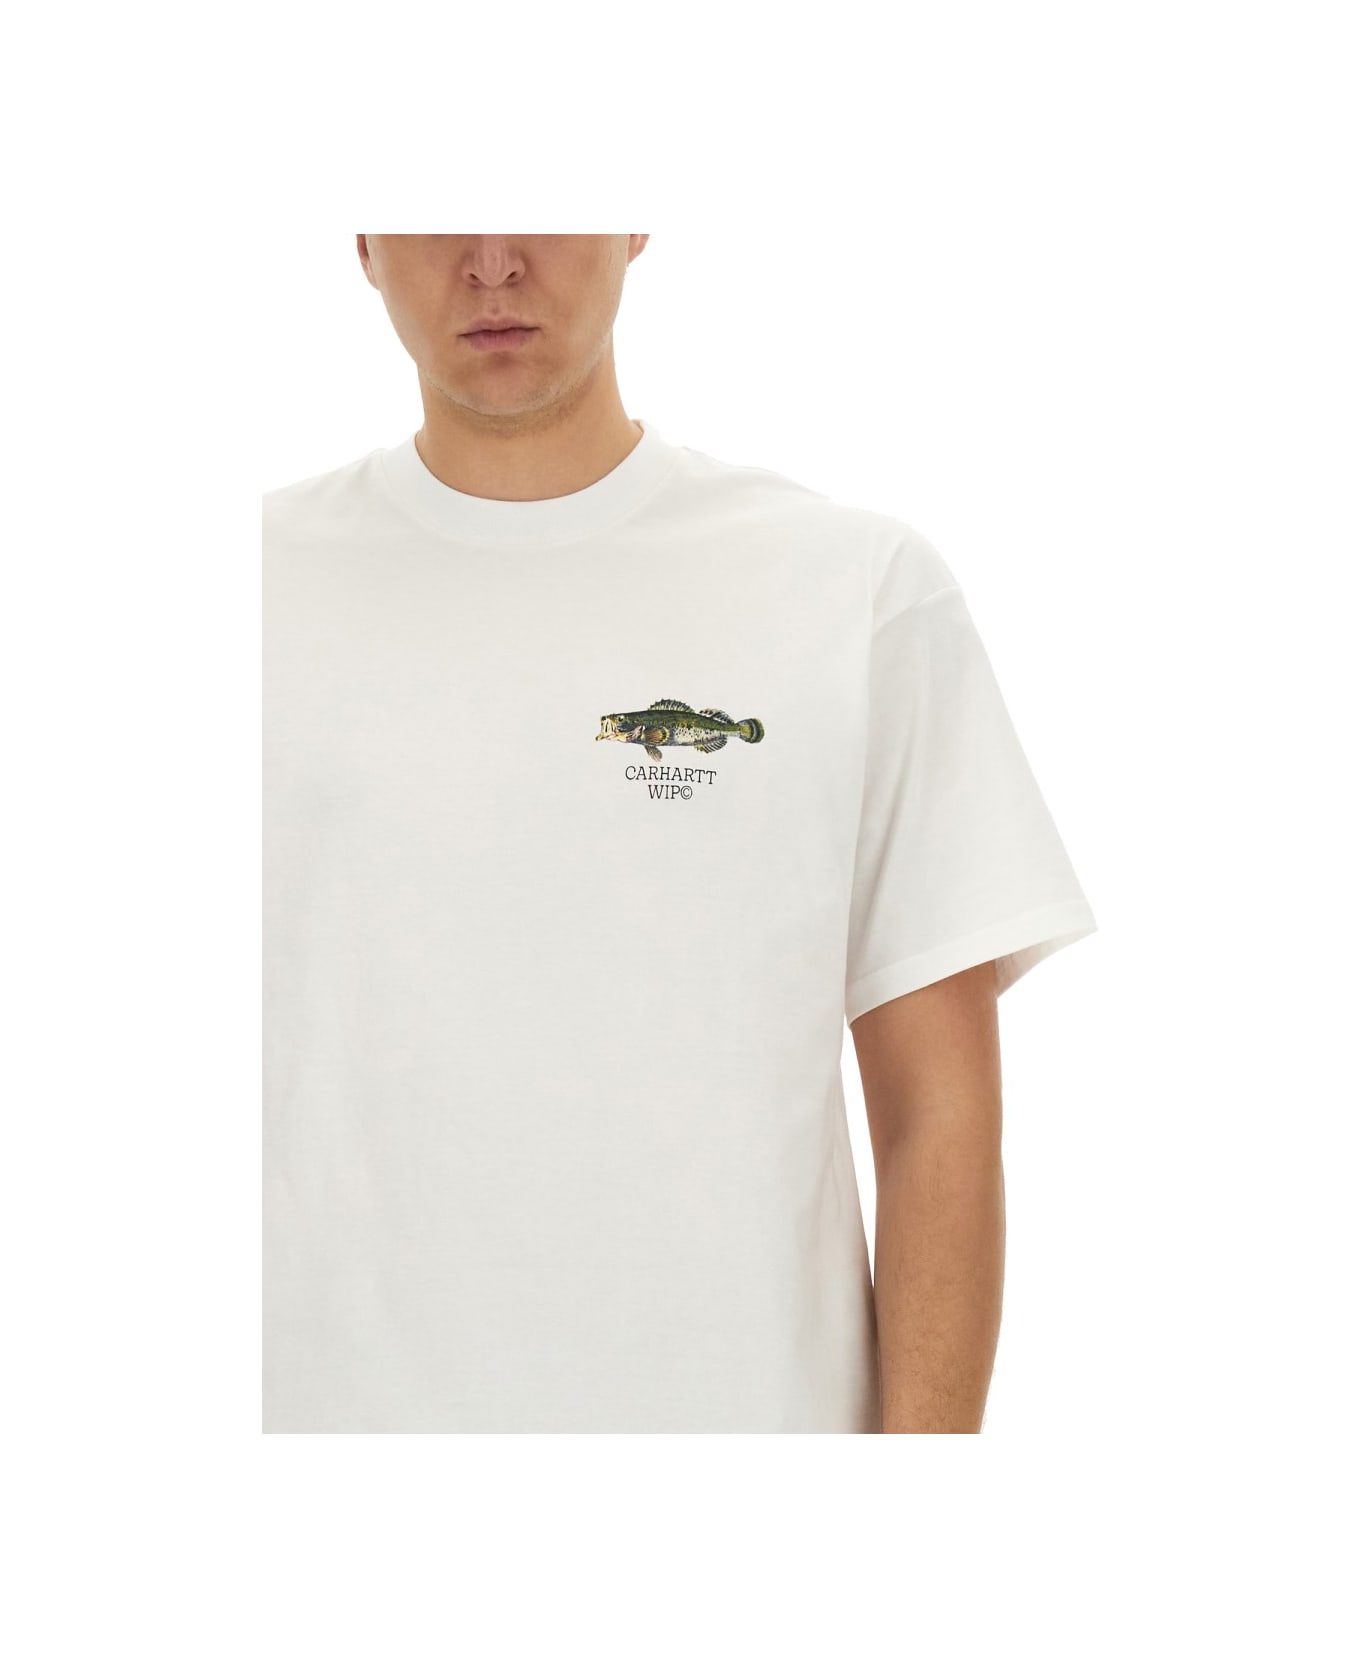 Carhartt WIP T-shirt 'fish' - White シャツ